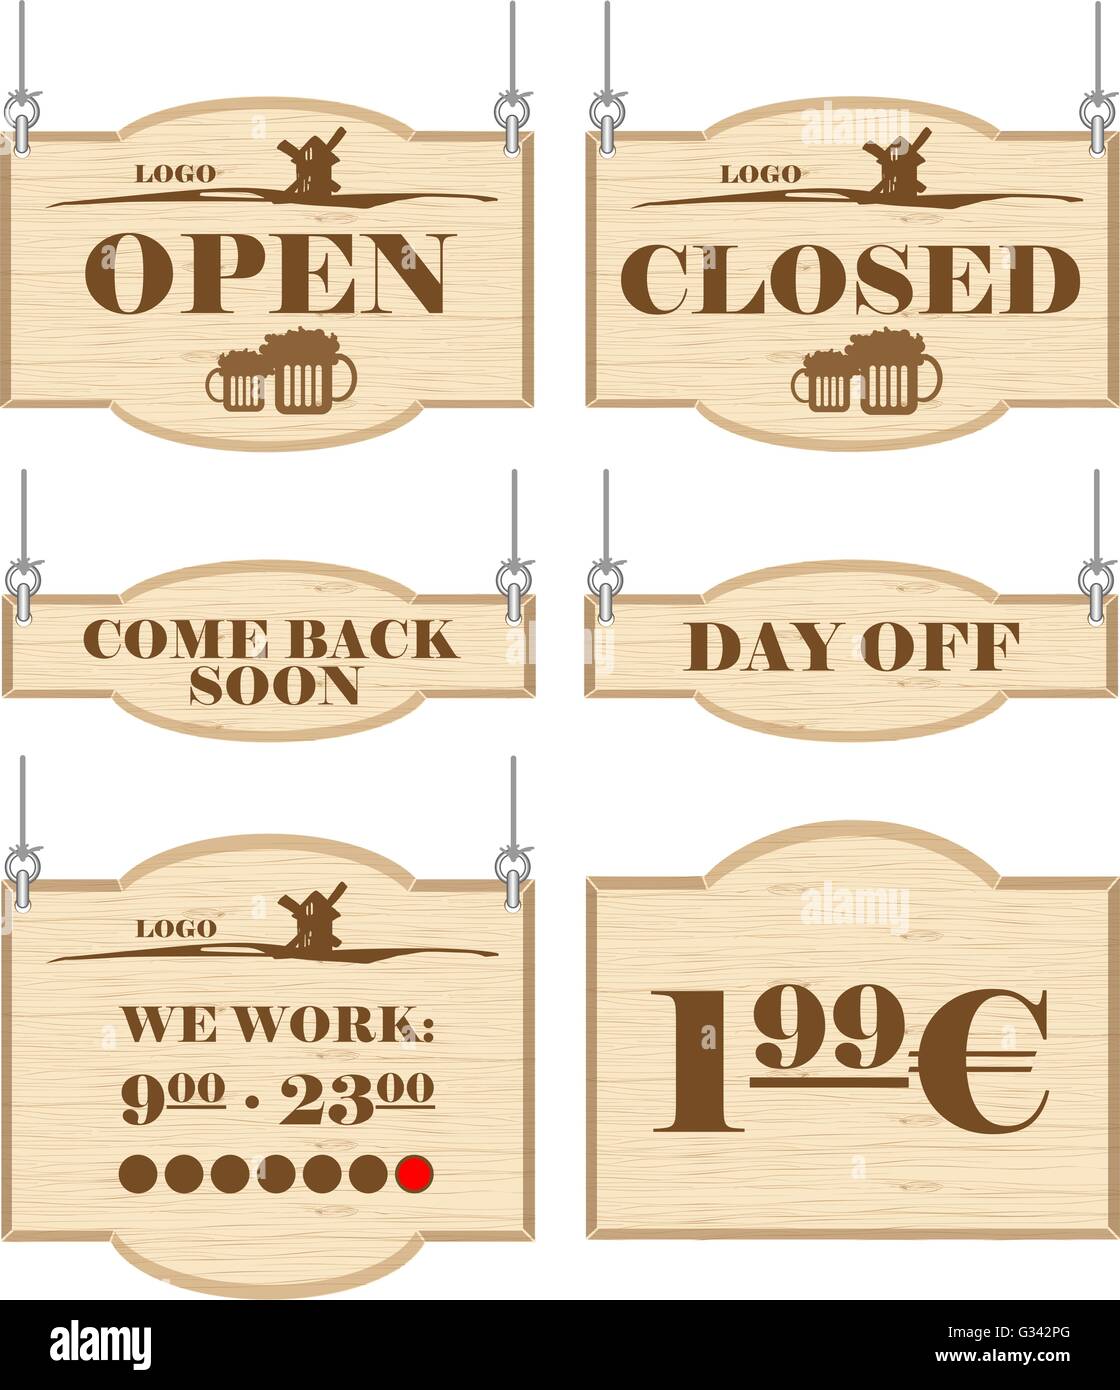 Western bar logo insieme con aperto, chiuso, giornata segni nel profilo. Vettore digitale dell'immagine. Illustrazione Vettoriale